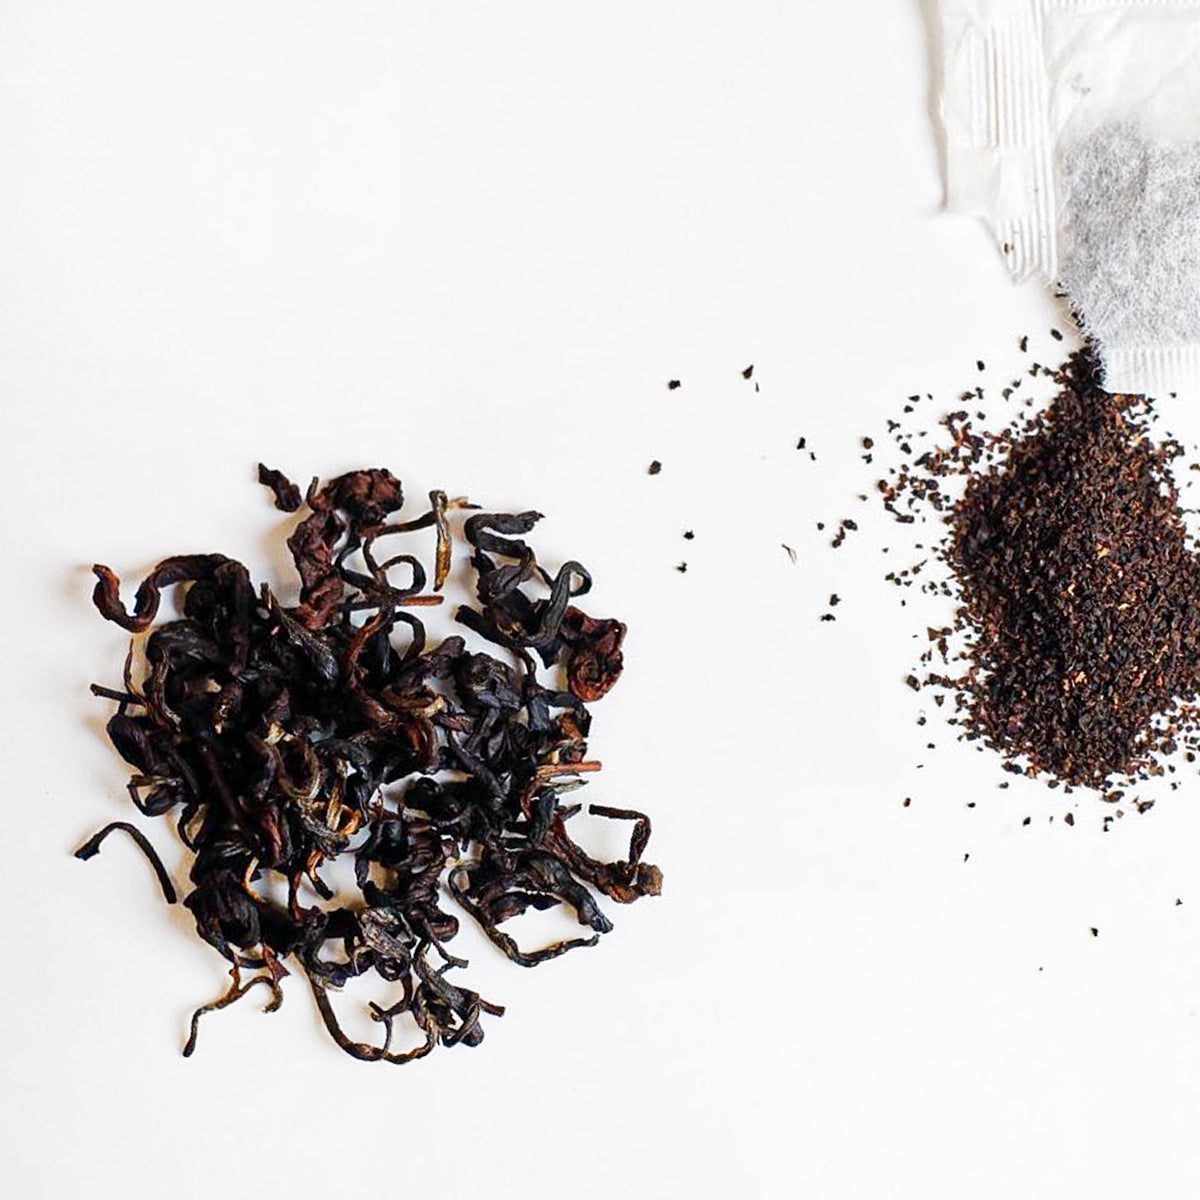 Loose Leaf Tea vs Tea Bags